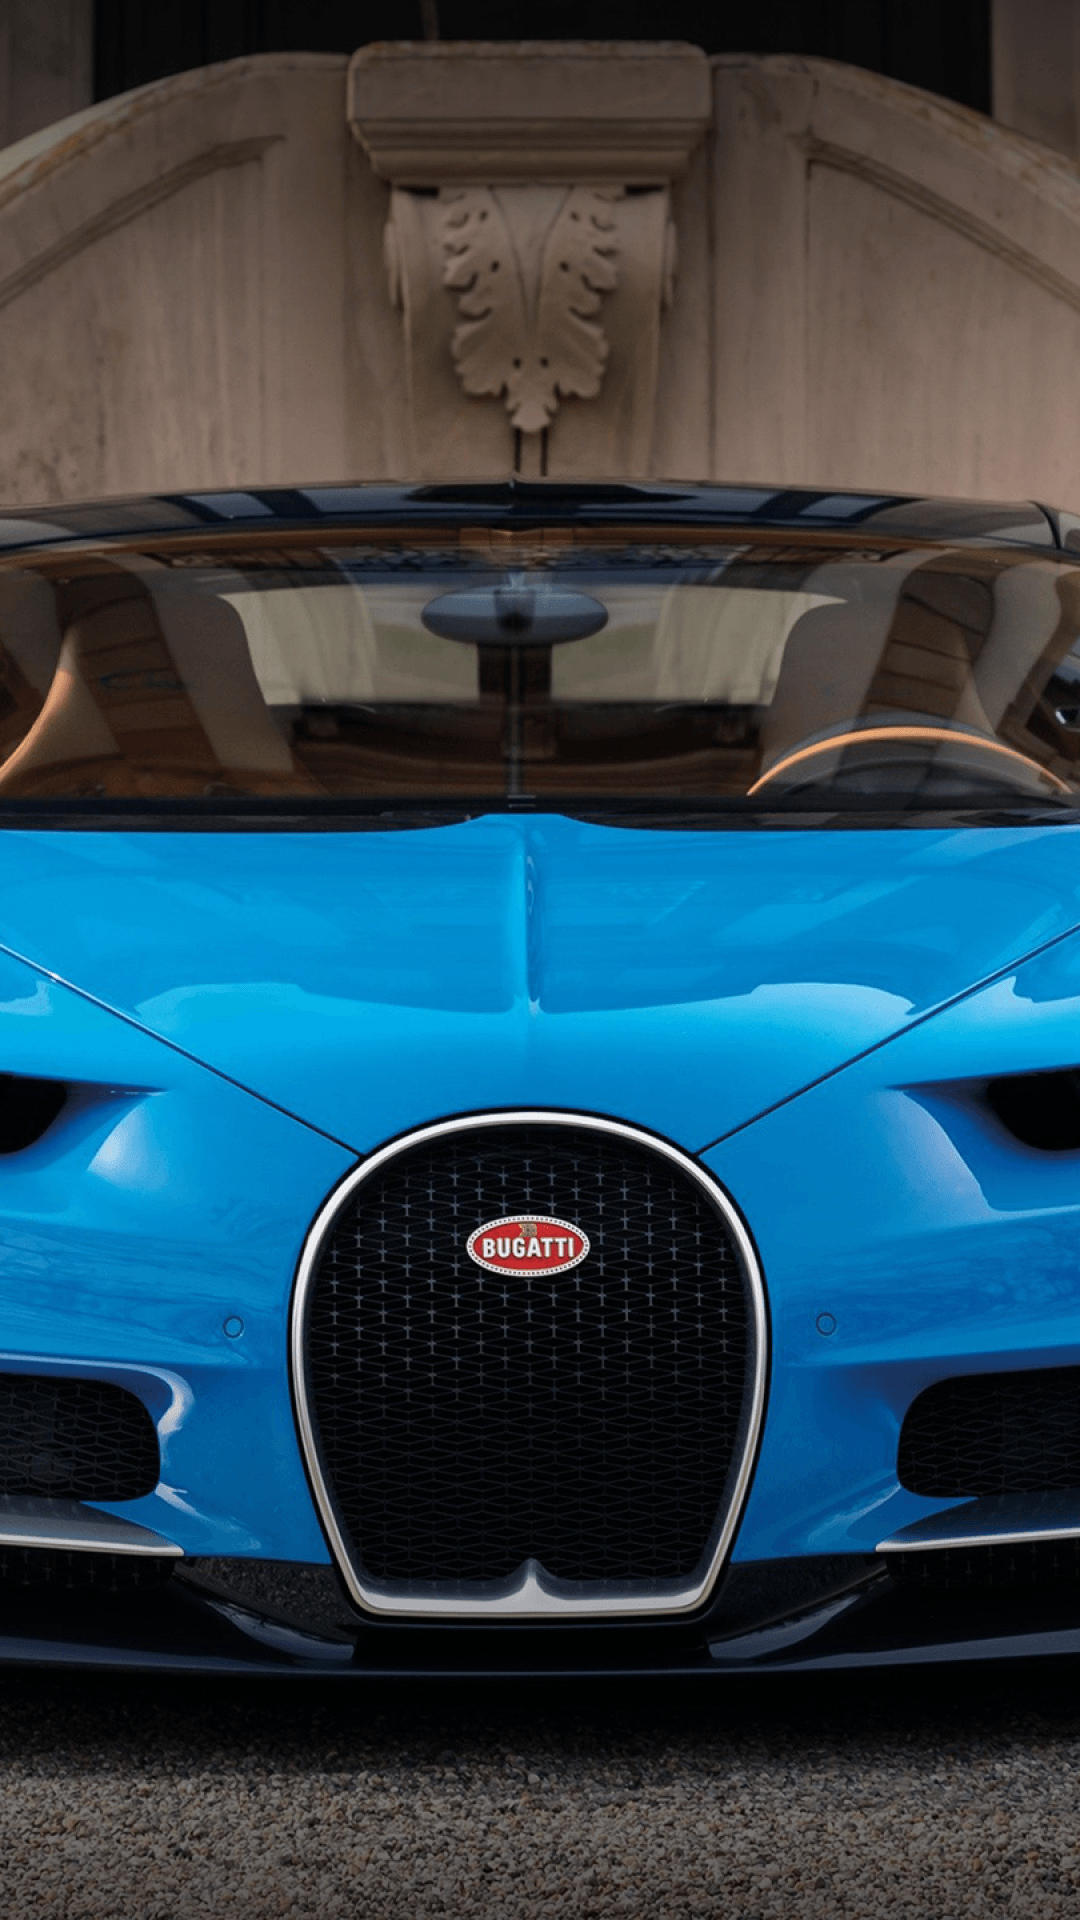 تصویر خودروی آخرین مدل بوگاتی به رنگ آبی درخشان برای والپیپر 